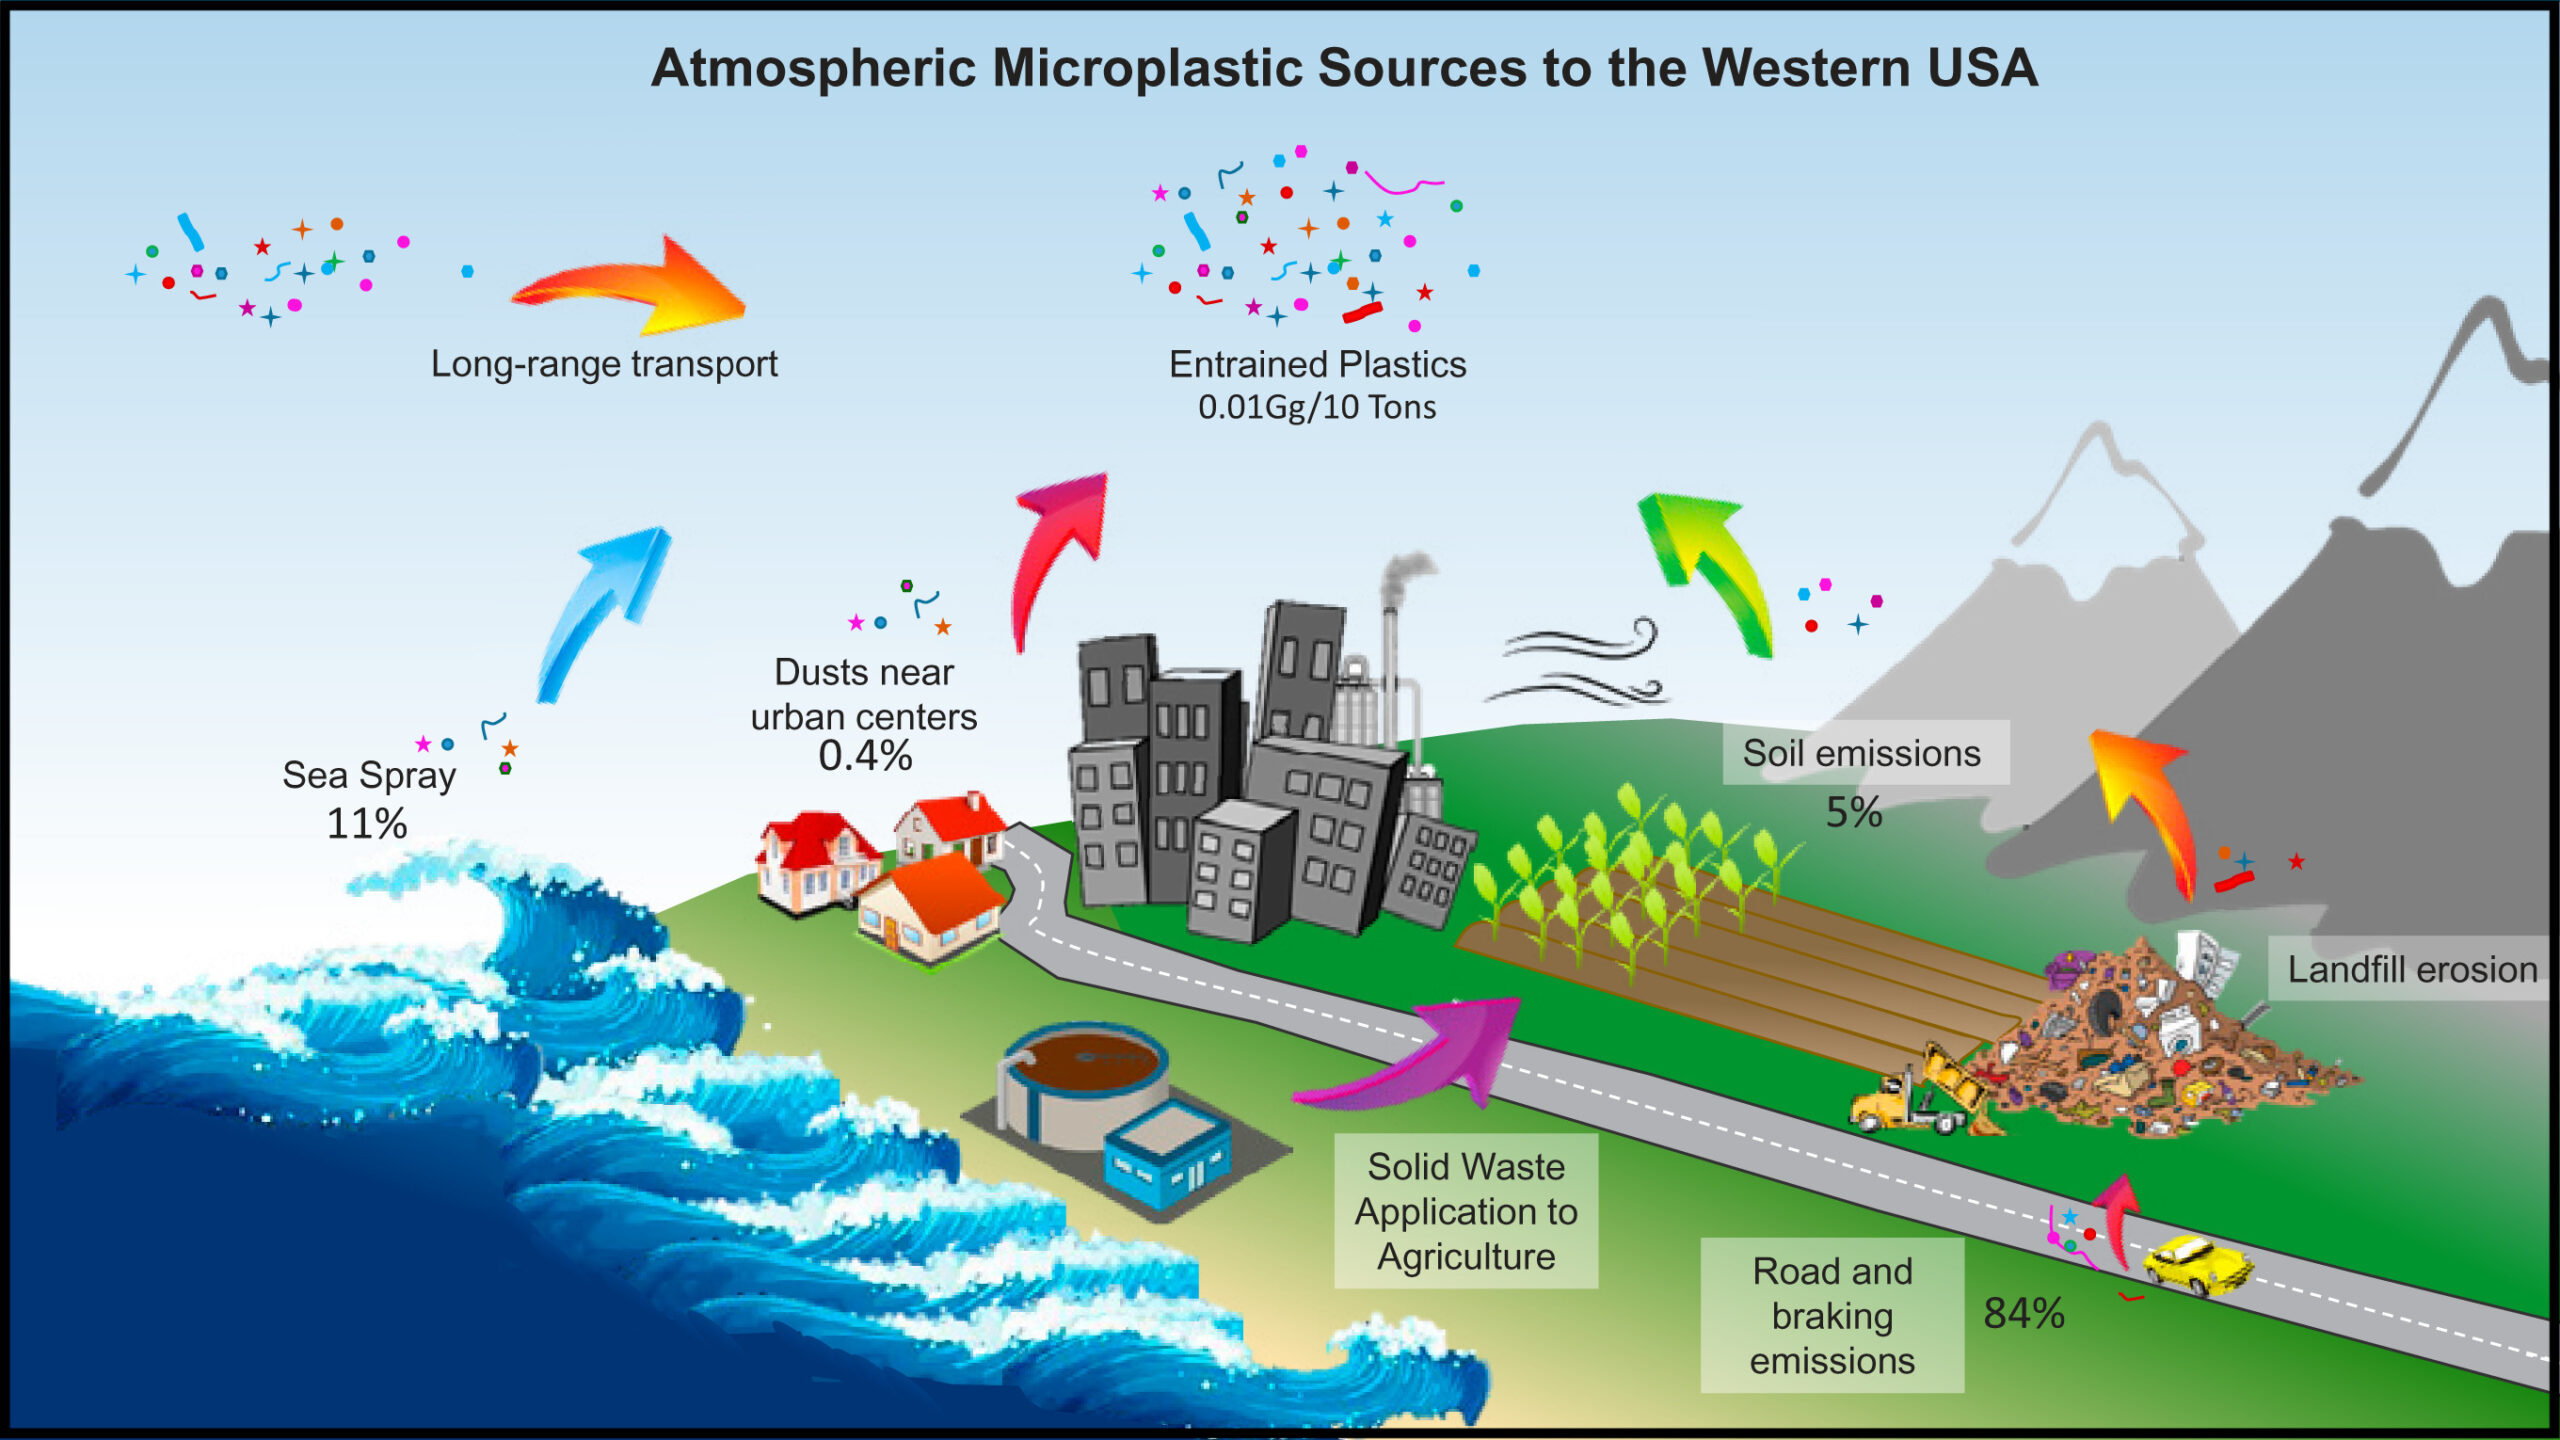 Os microplásticos estão enchendo os céus. Eles afetarão o clima?